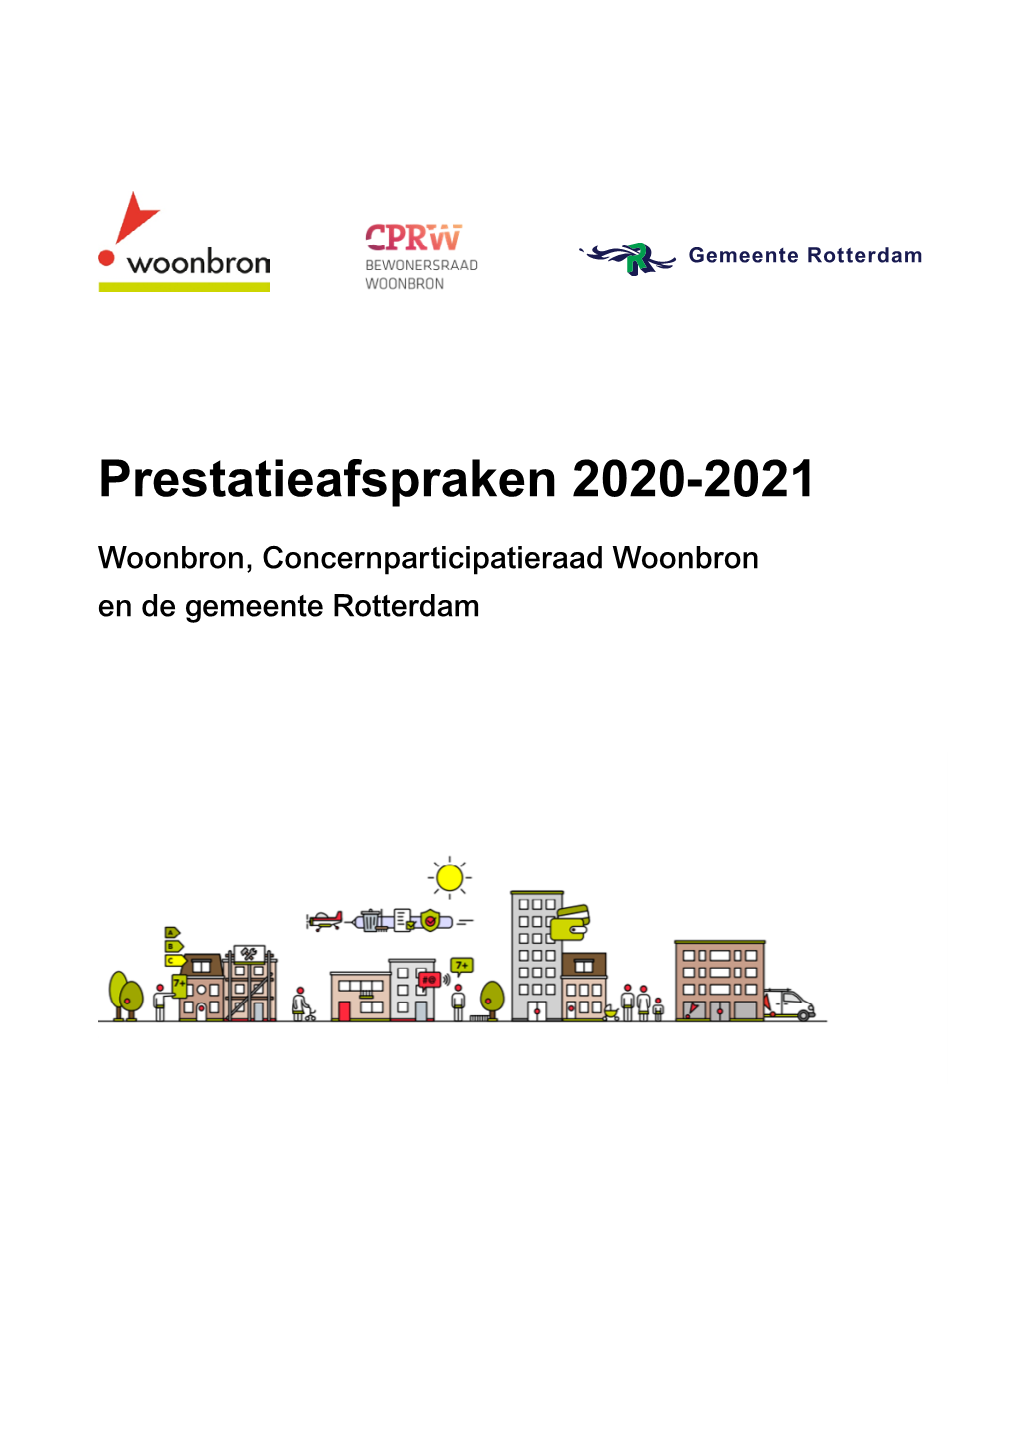 Prestatieafspraken 2020-2021 Woonbron, Concernparticipatieraad Woonbron En De Gemeente Rotterdam